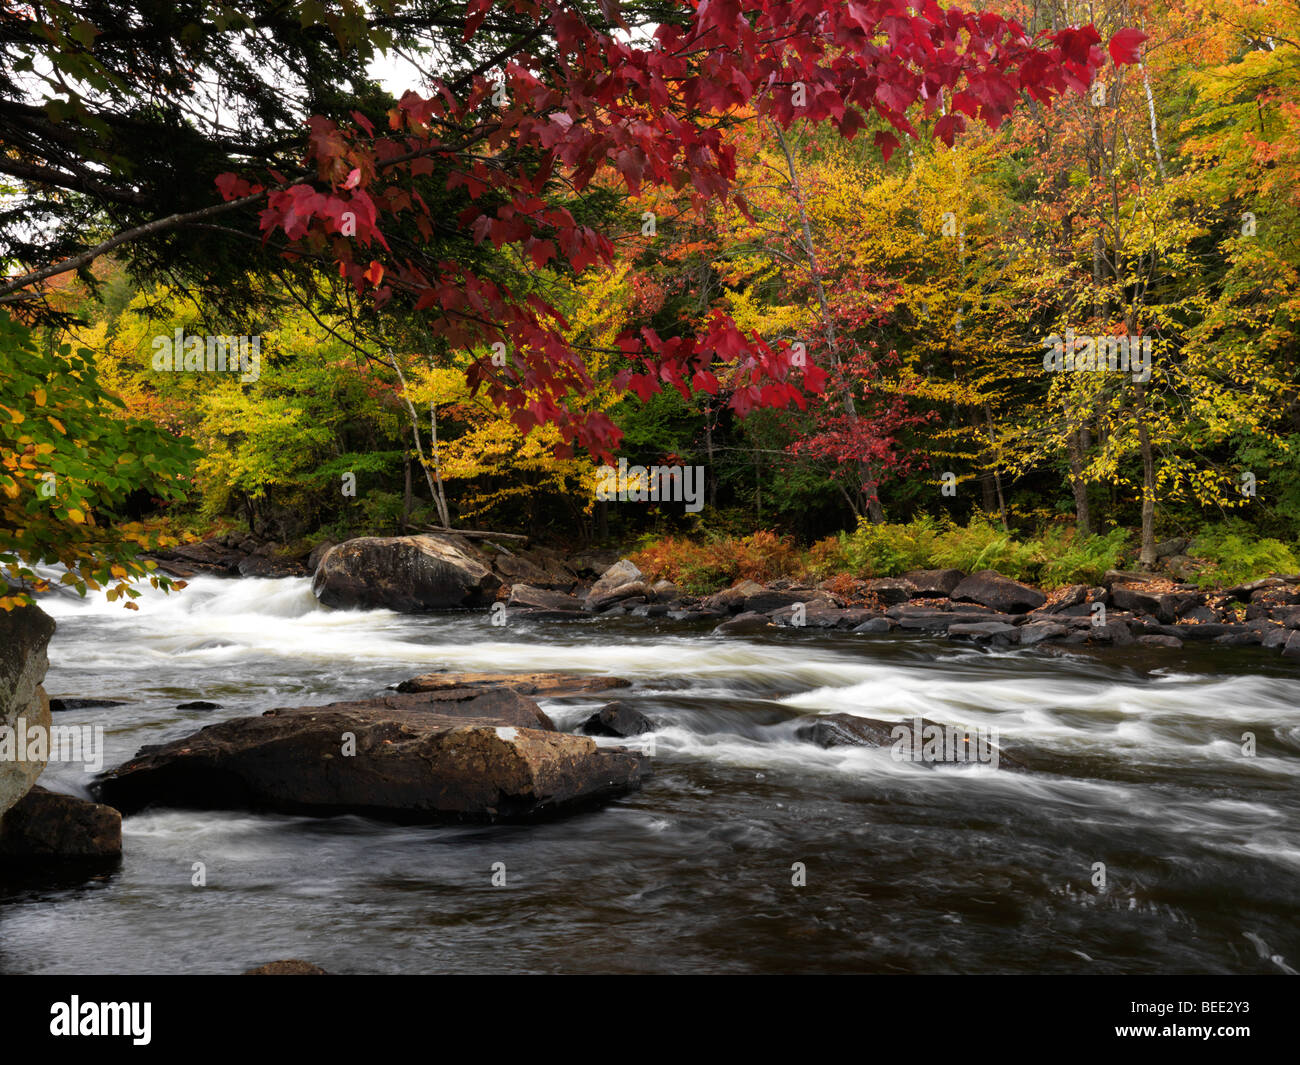 Oxtongue Rapids. Beautiful fall nature scenery. Stock Photo